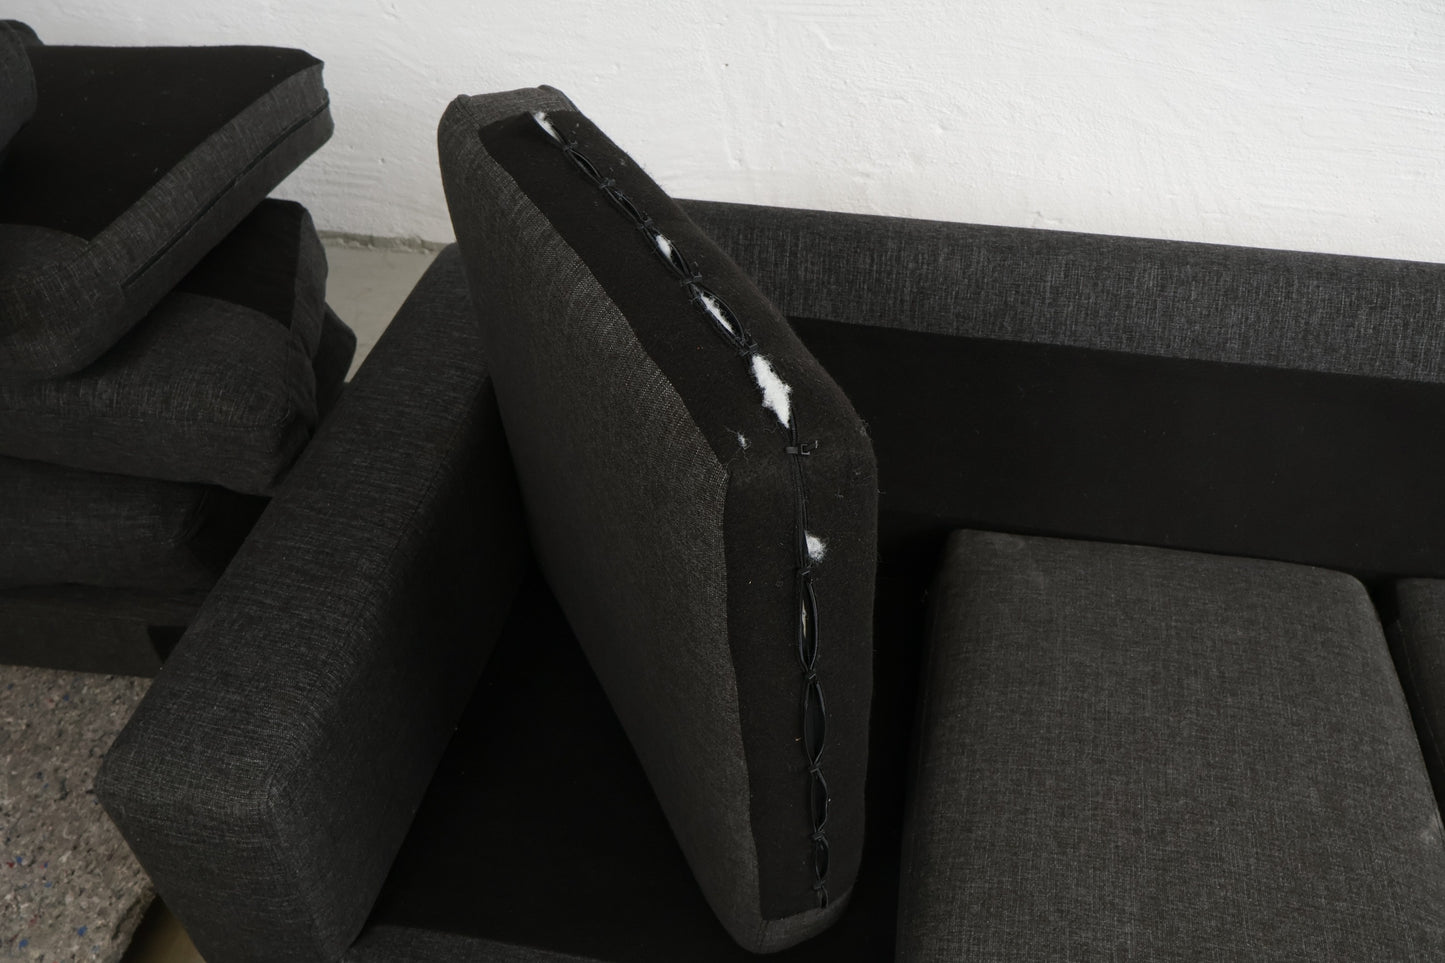 Nyrenset | Mørk grå u-sofa med sjeselong